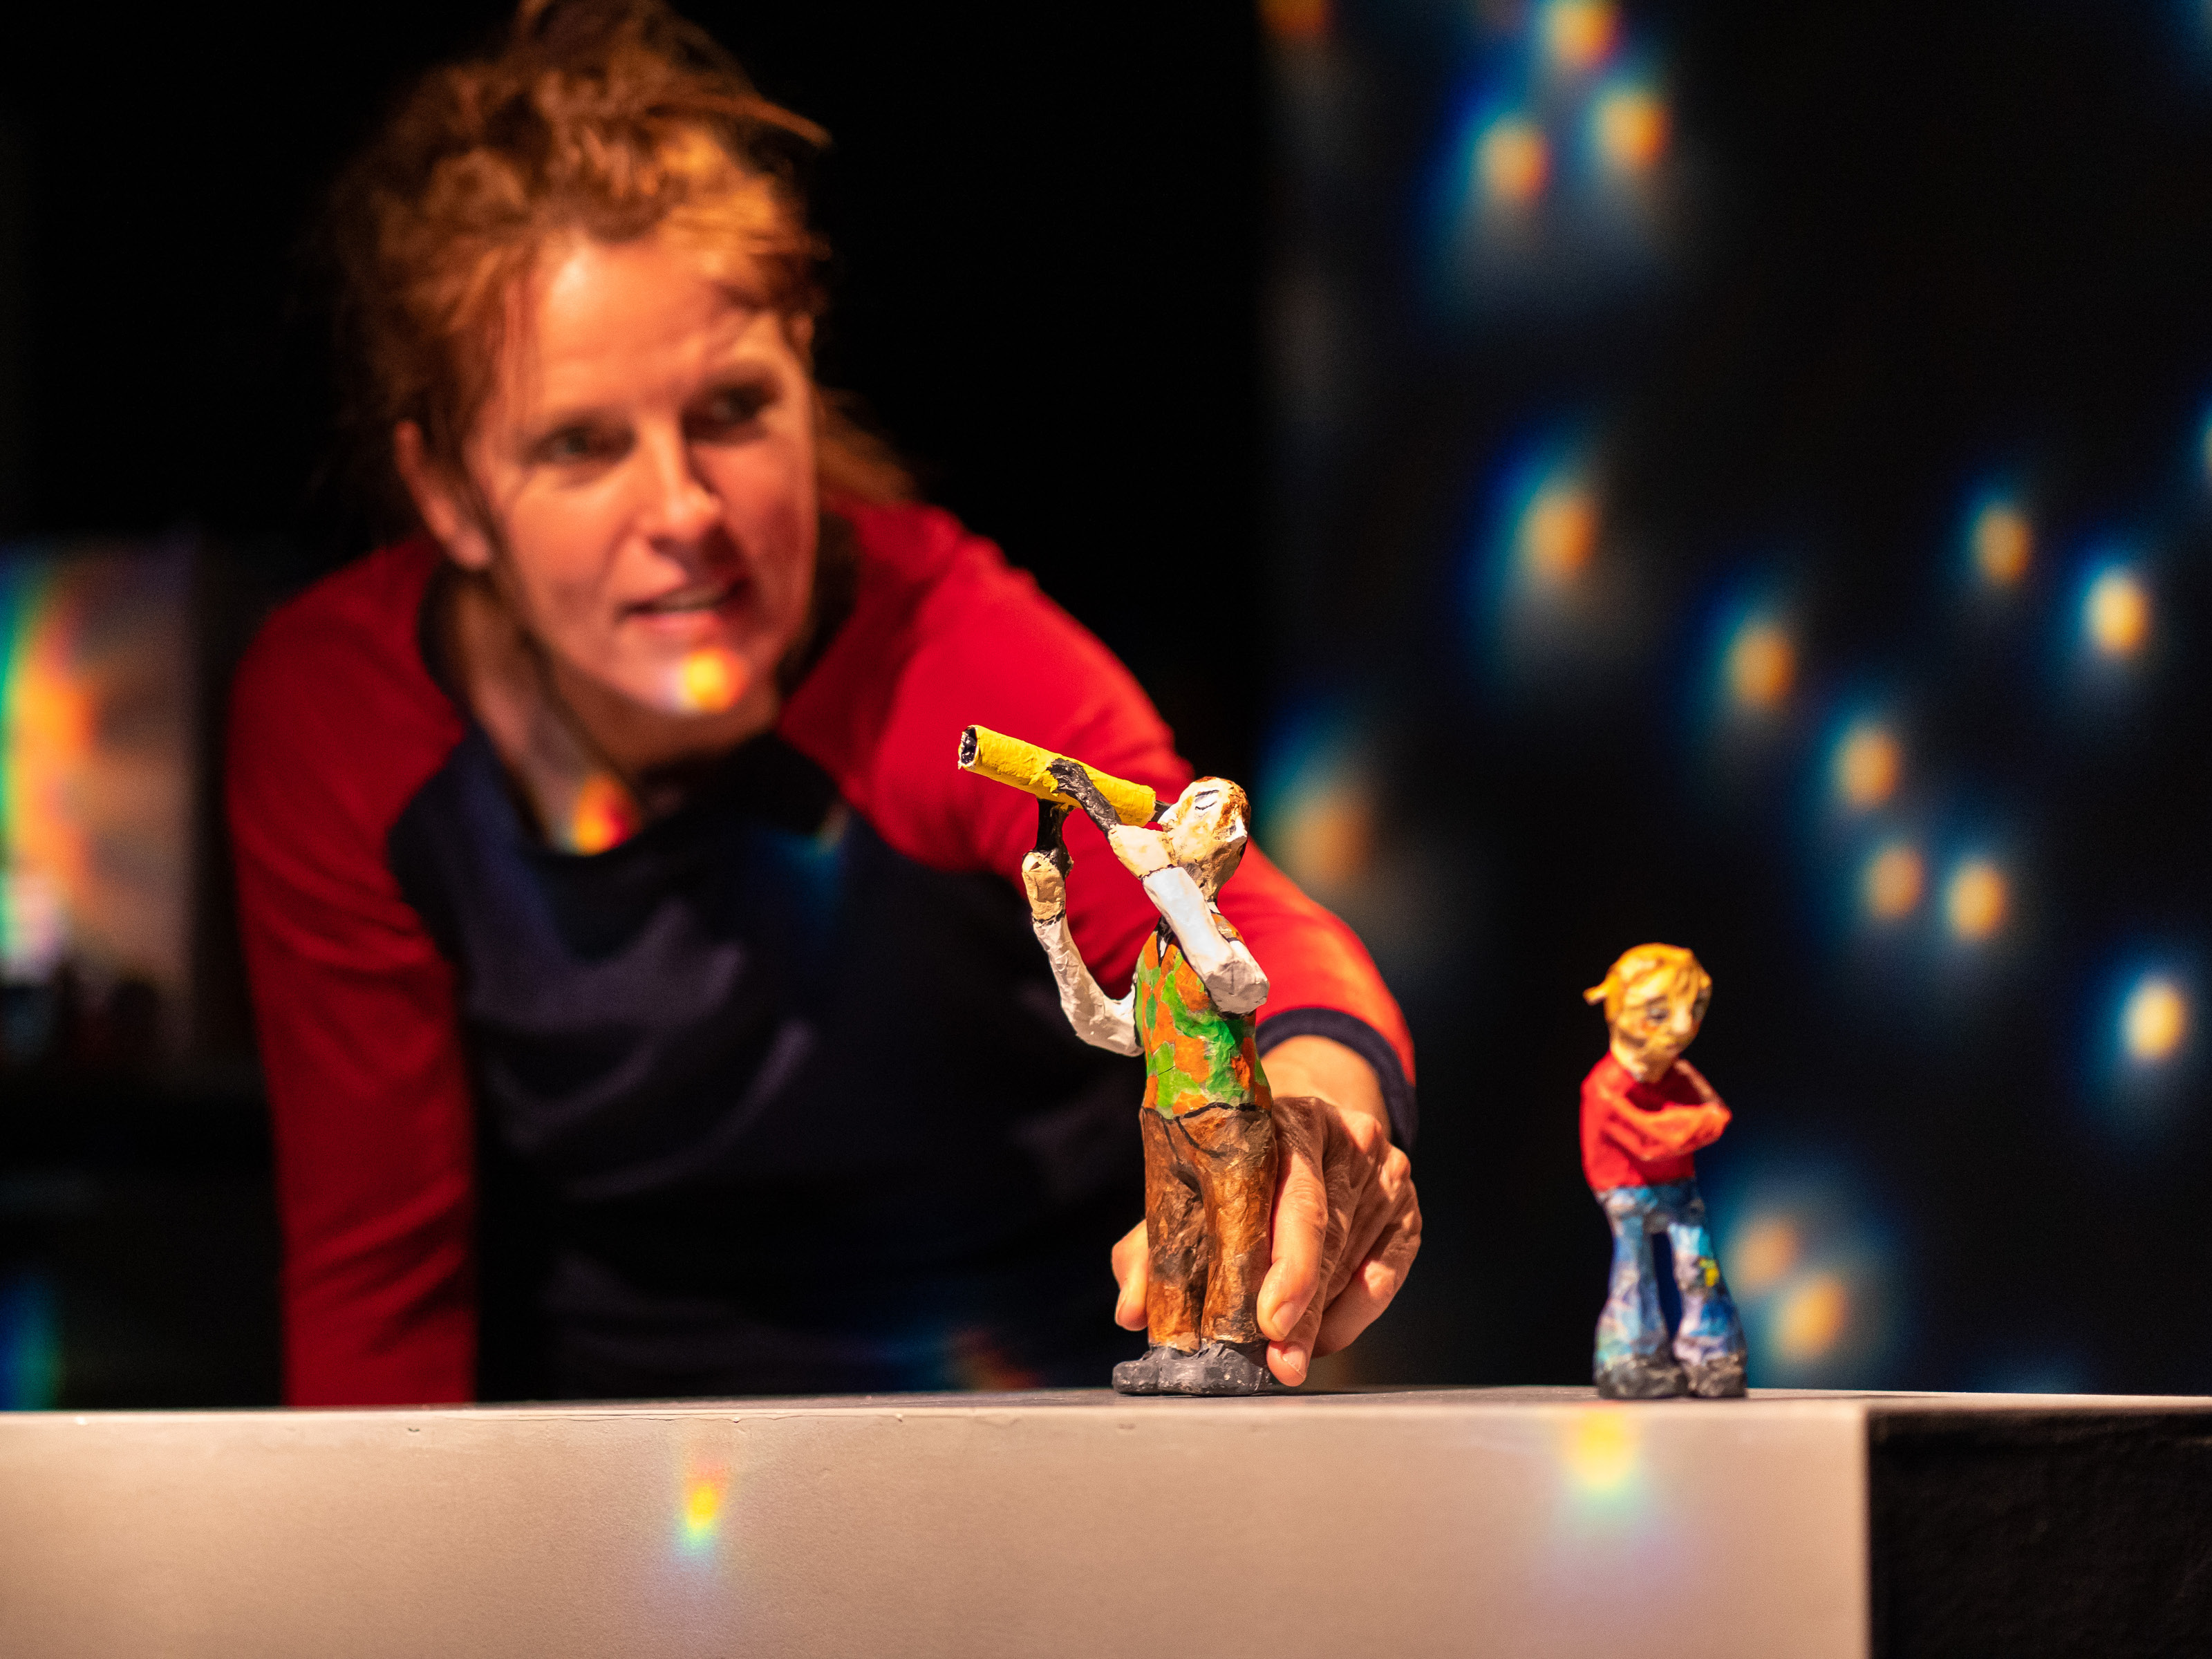 Puppenspielerin Annegret Geist hält die Figur eines Mannes mit Sternfernrohr in der Hand. Von ihm abgewandt steht ein kleines Mädchen mit roten Haaren und hat die Arme verschränkt. Im Hintergrund leuchten an der dunnklen Wand helle Lichtpunkte.